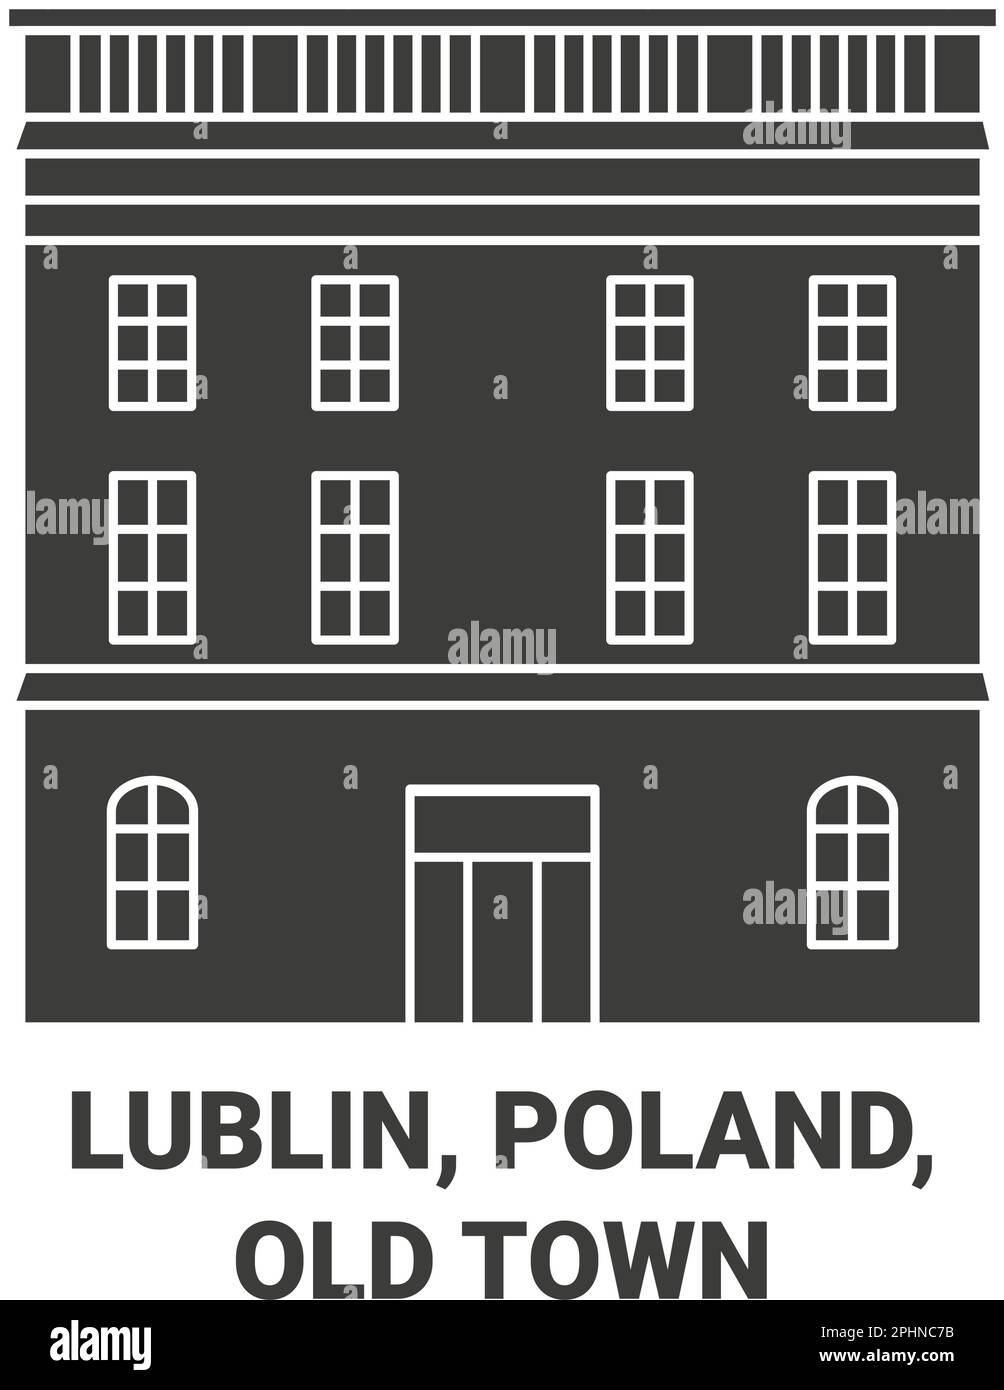 Polonia, Lublin, ilustración vectorial de punto de referencia de viaje de la ciudad vieja Ilustración del Vector